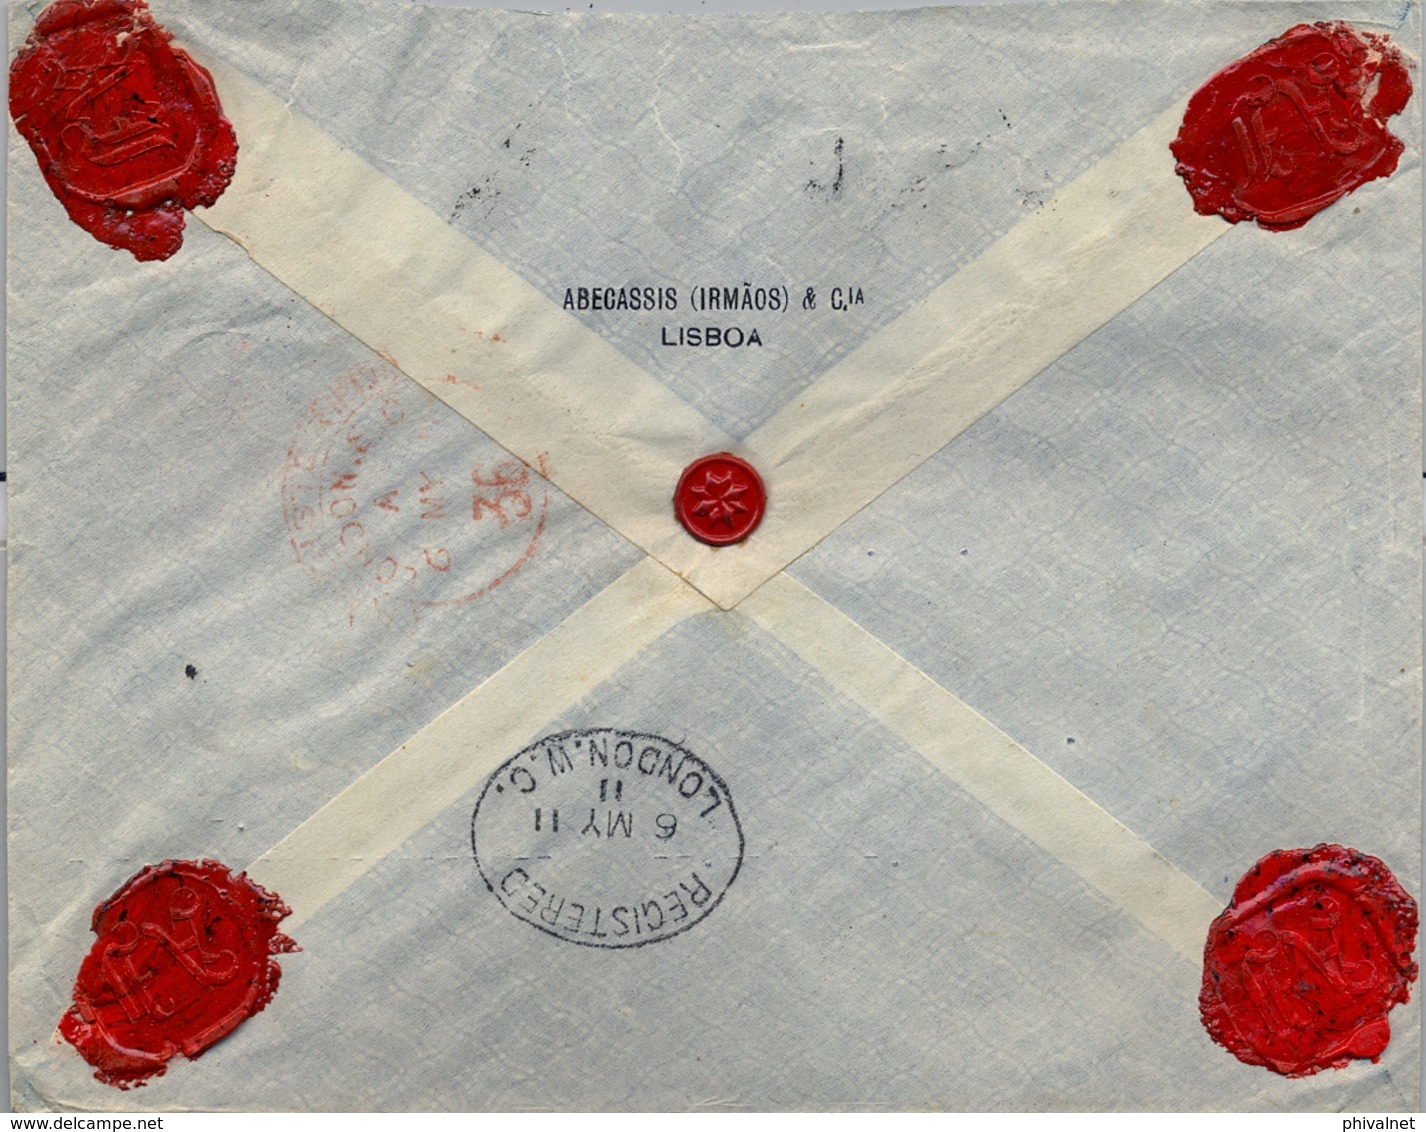 1911 PORTUGAL , LISBOA - LONDRES , SOBRE CERTIFICADO, LLEGADA AL DORSO , D. MANUEL II - 162 , 176 - Lettres & Documents